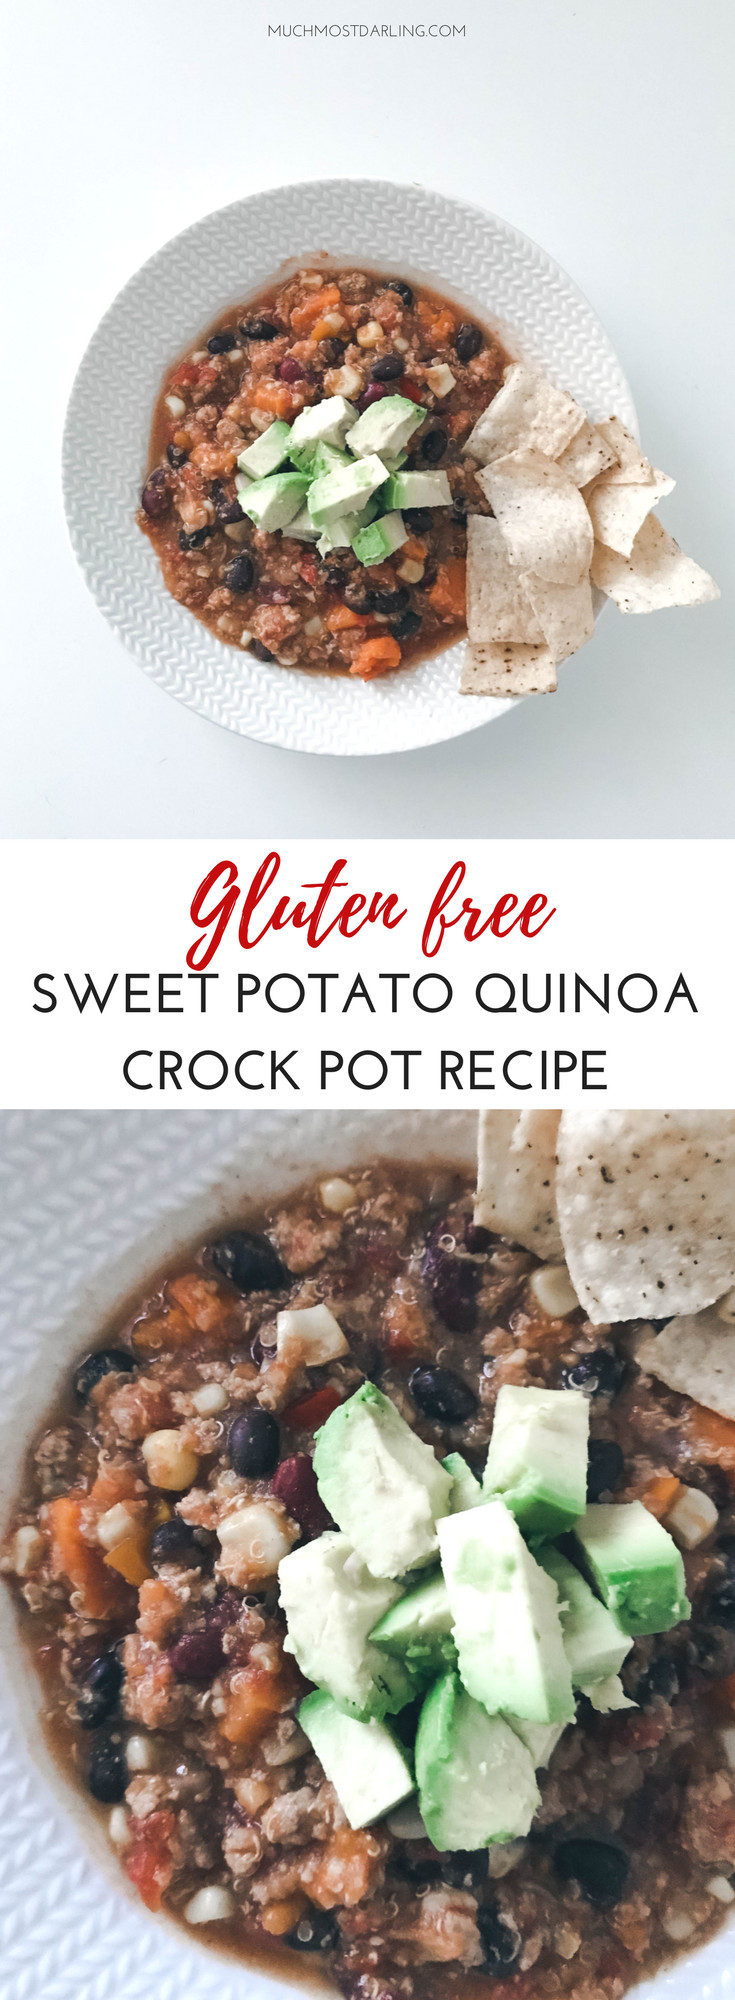 Healthy Ground Turkey Crock Pot Recipes
 Gluten Free Crockpot Recipe Sweet Potato & Ground Turkey